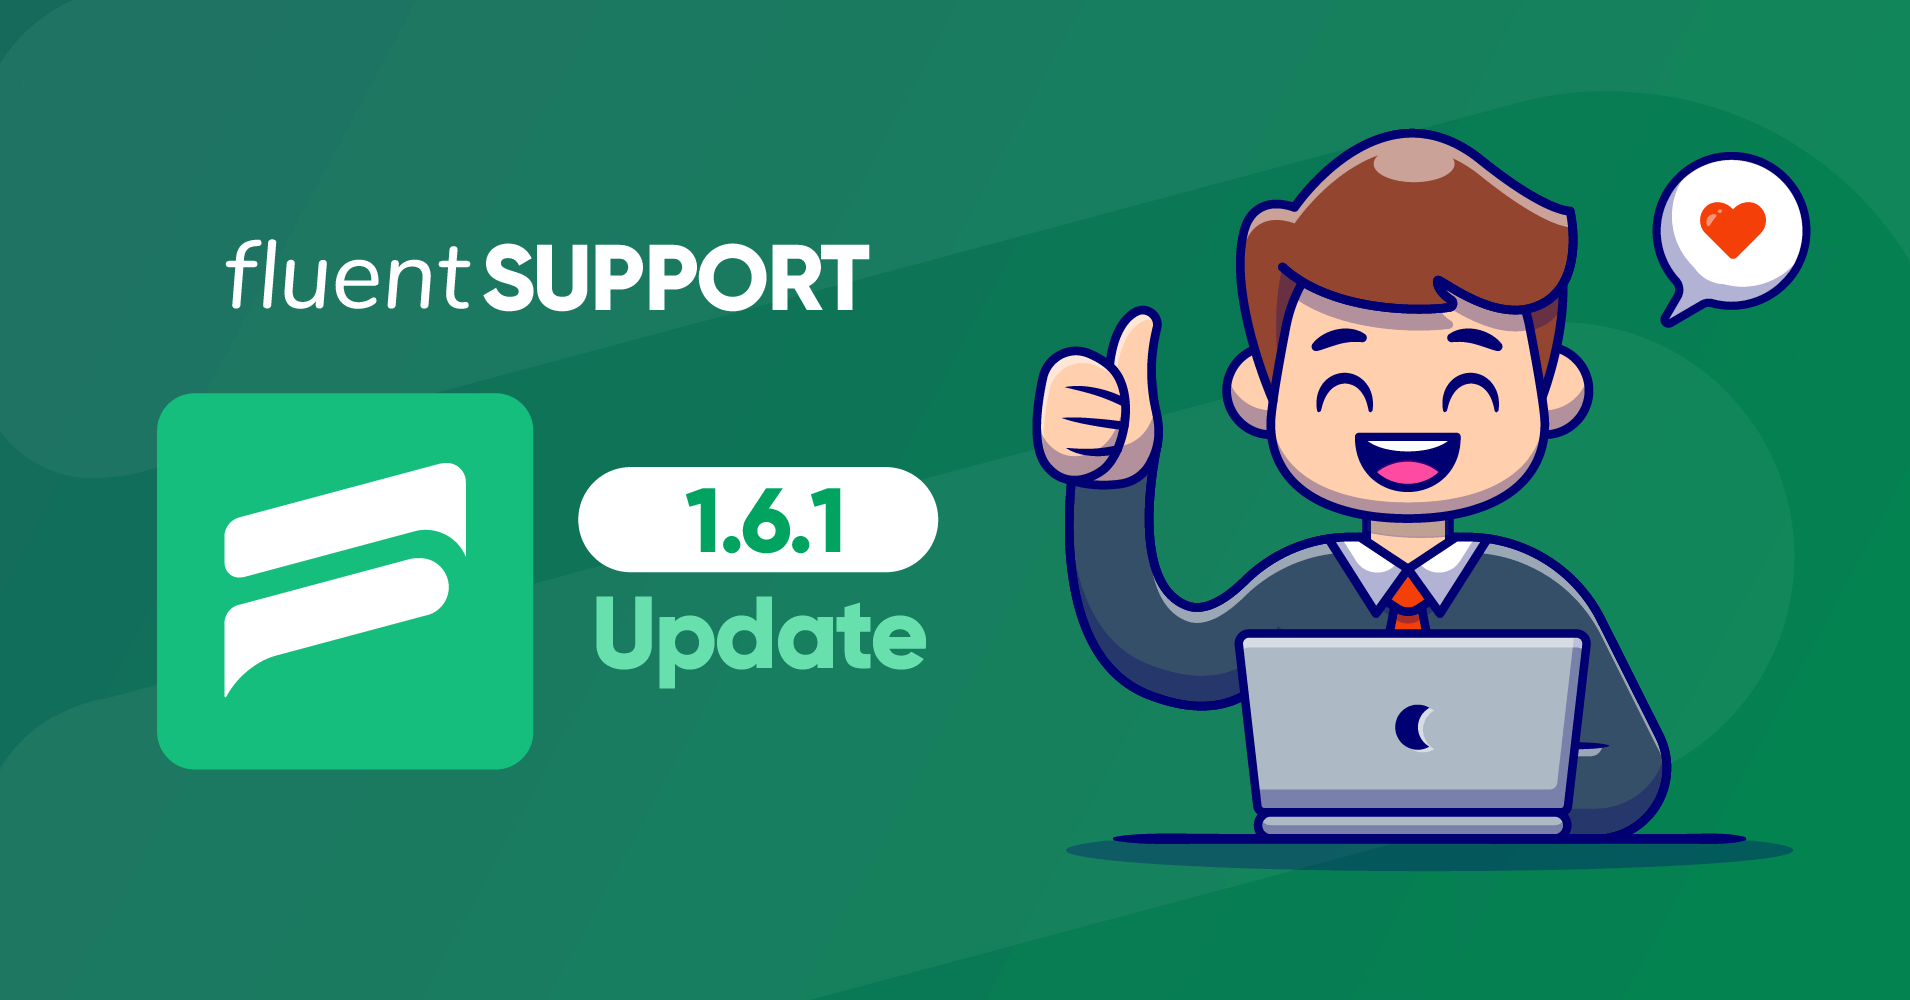 fluent support update